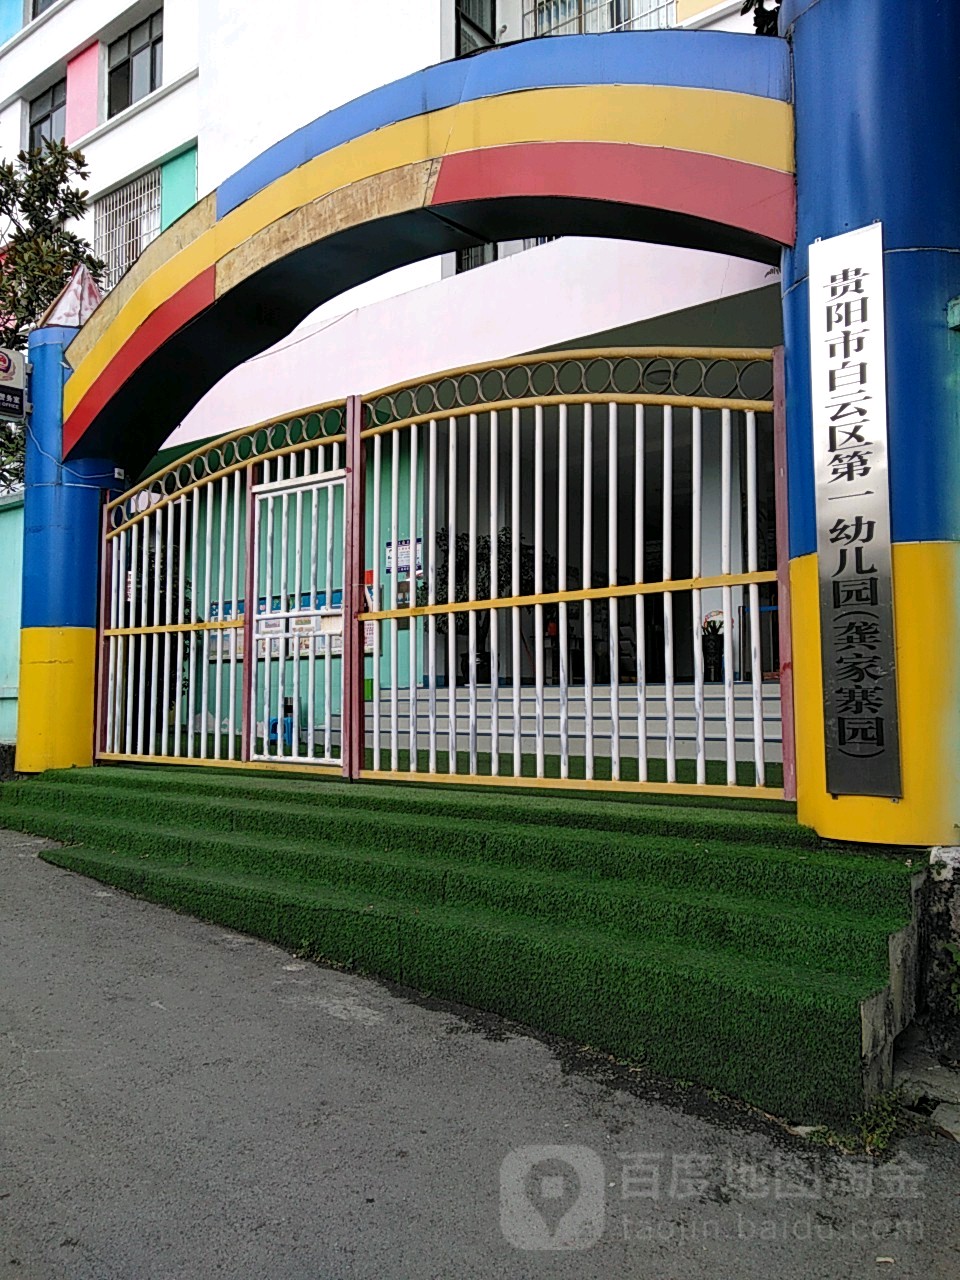 贵阳市白云区第一幼儿园(龚家寨园)的图片